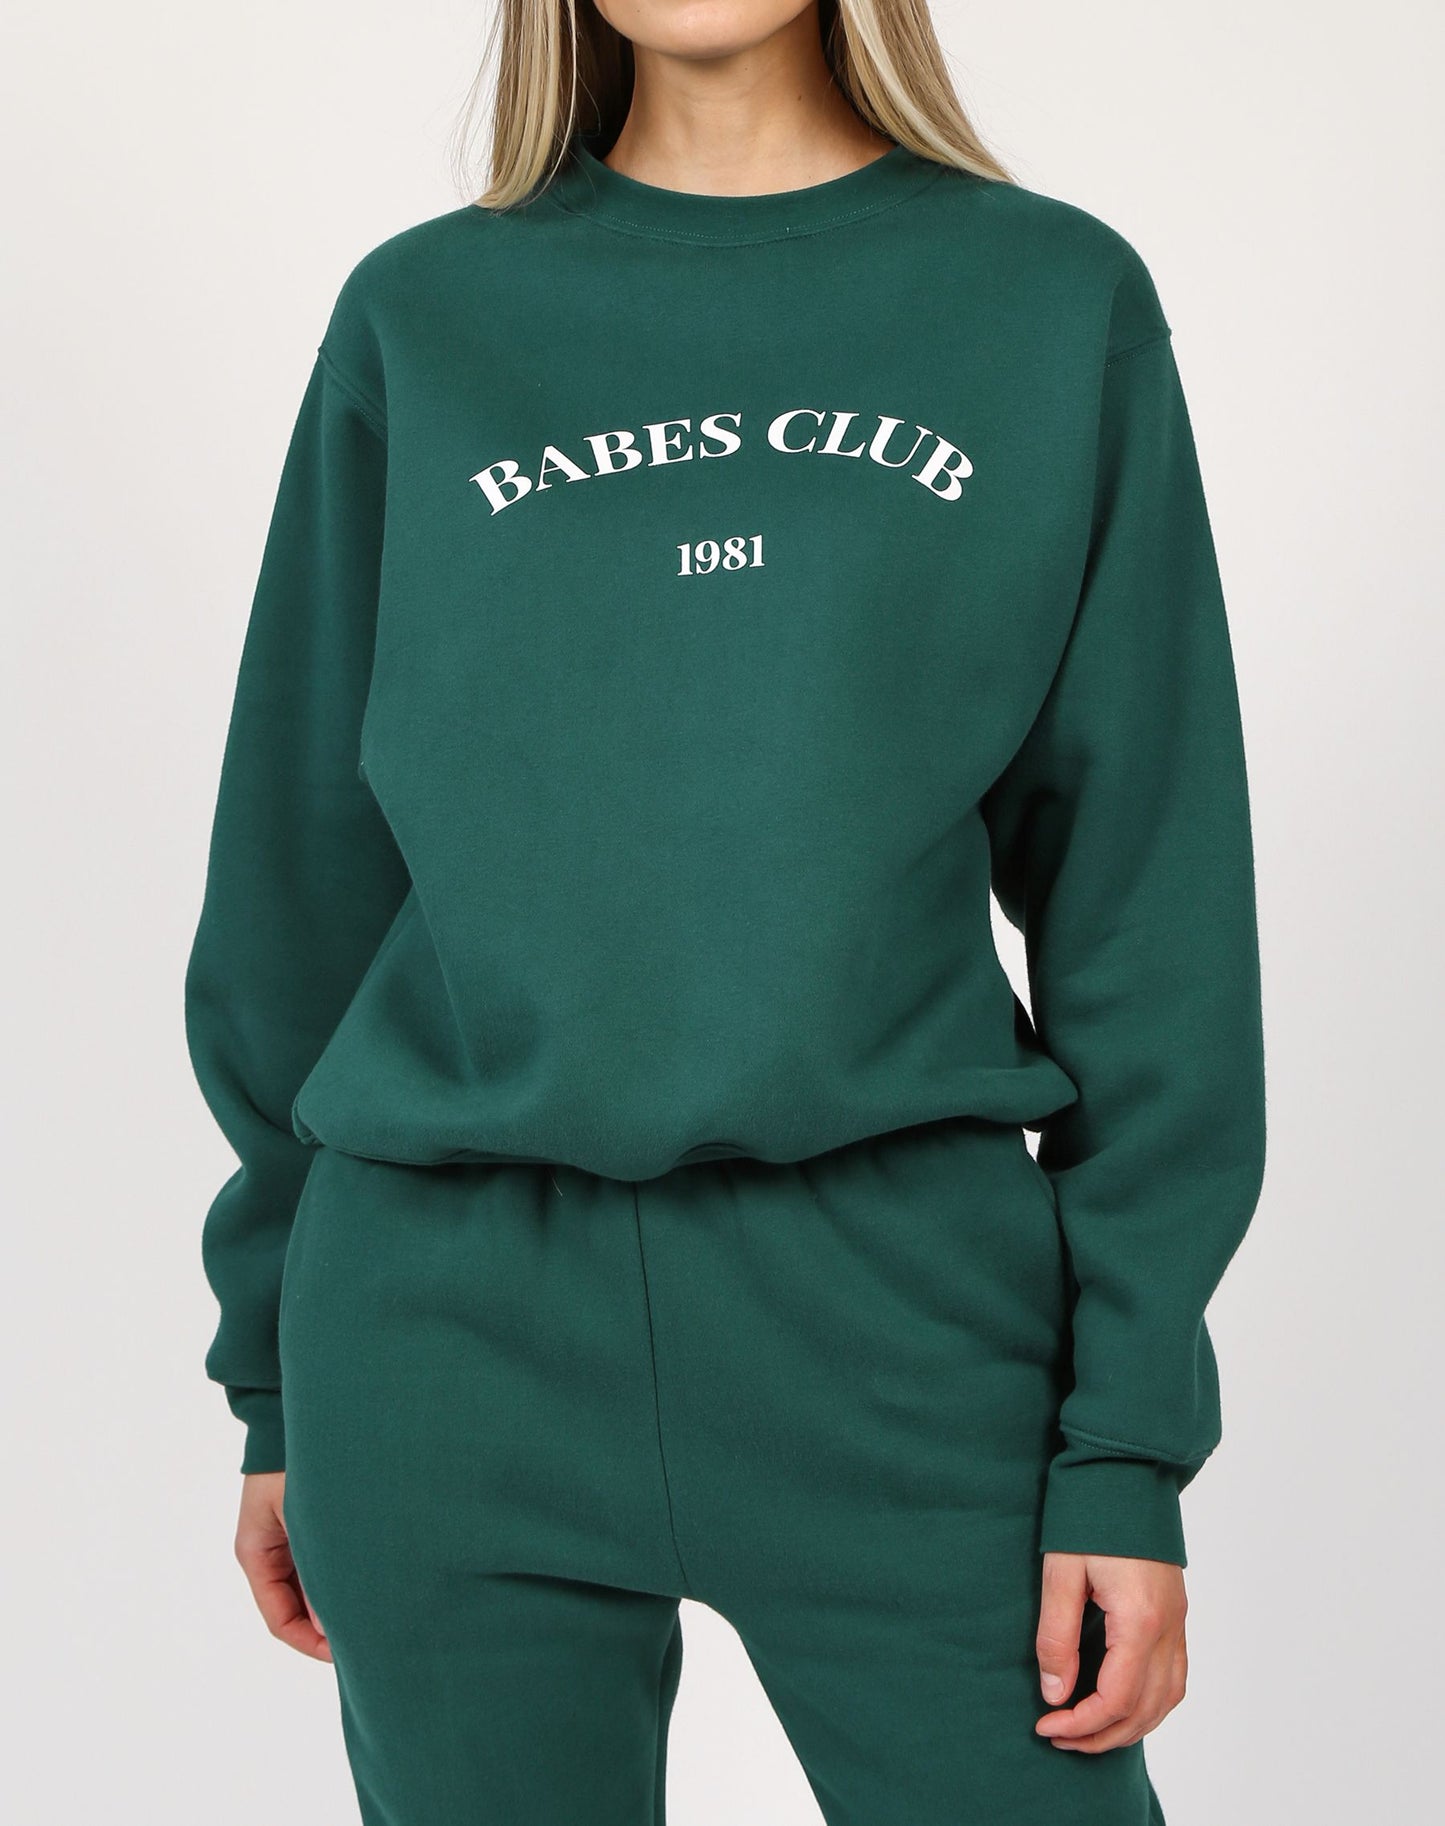 Babes Club Best Friend Crew Emerald